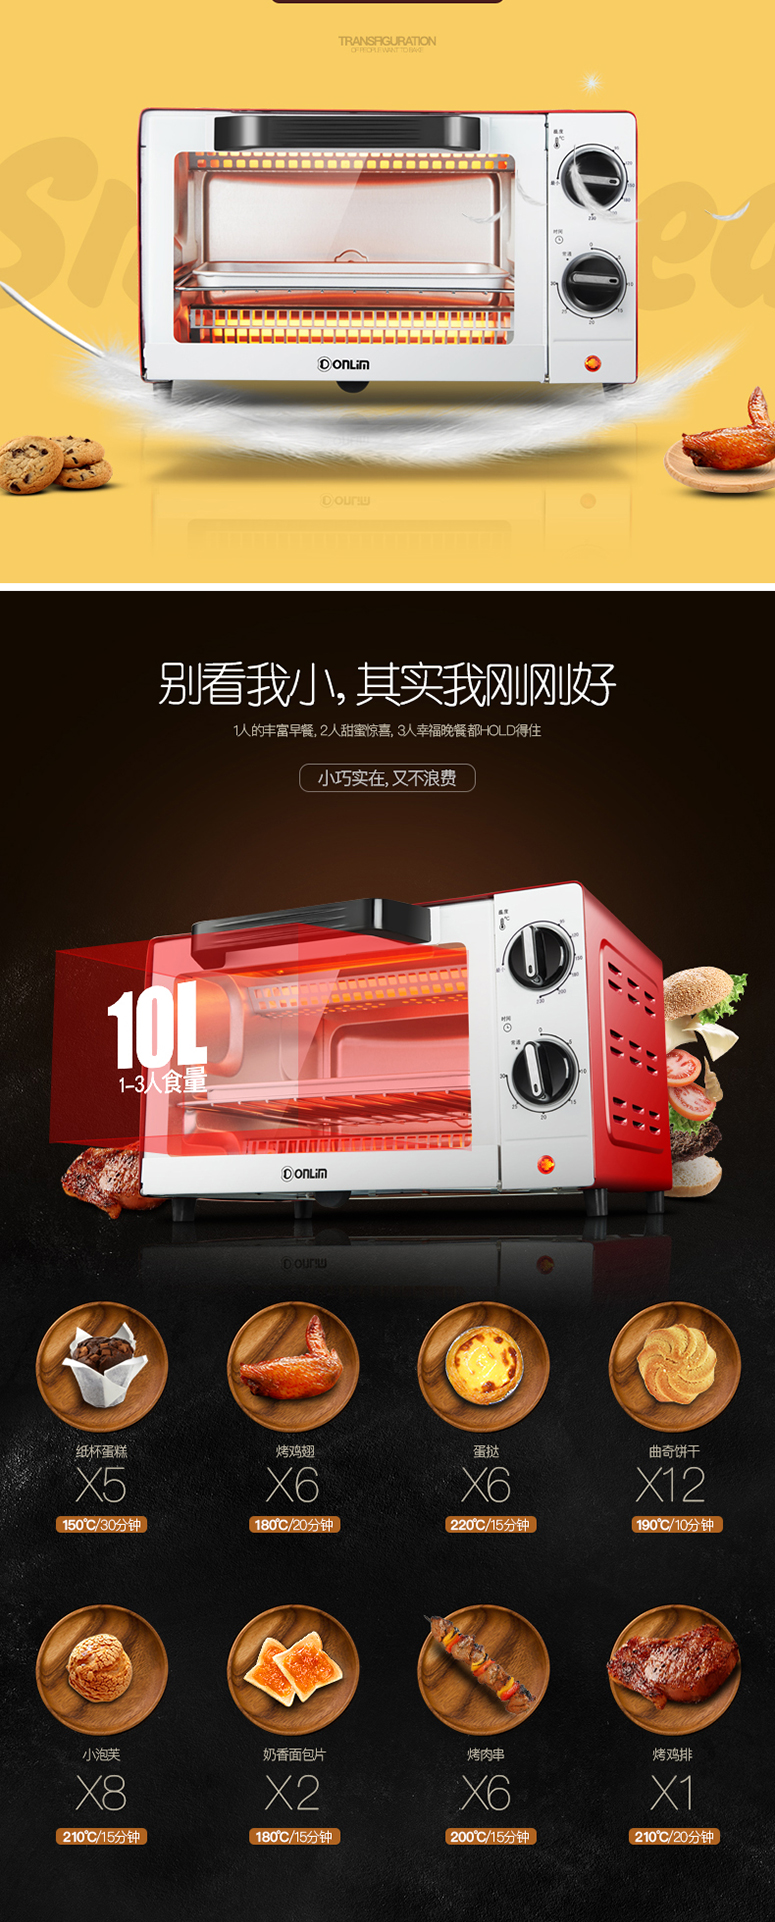 东菱电烤箱TO-610H宝贝描述_04.jpg